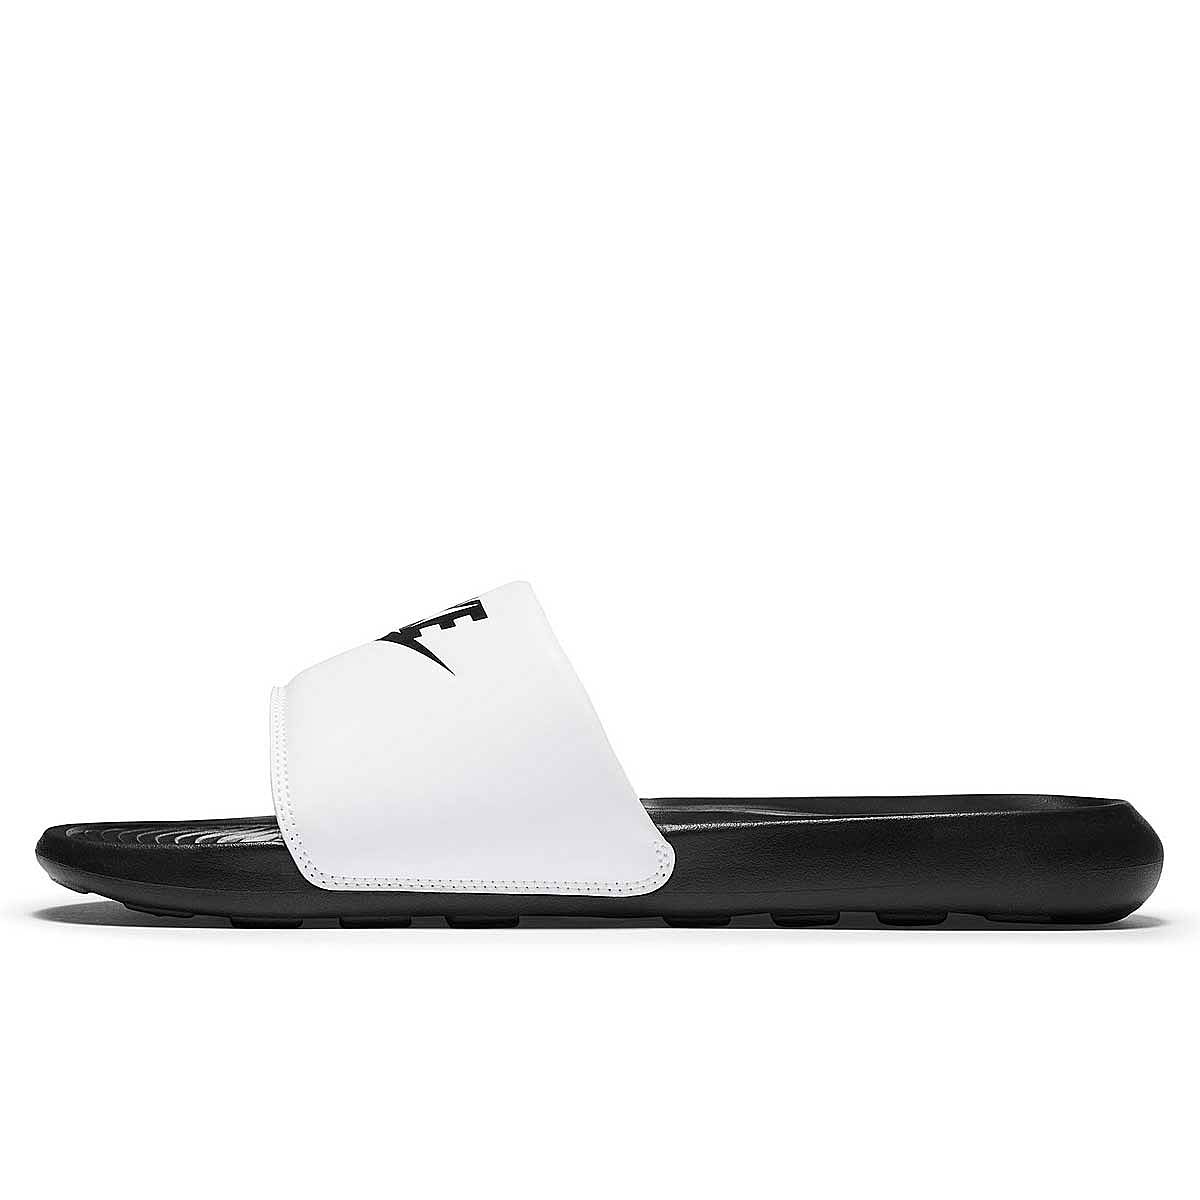 Nike Victori One Slide, Schwarz/schwarz-weiß EU49 1/2